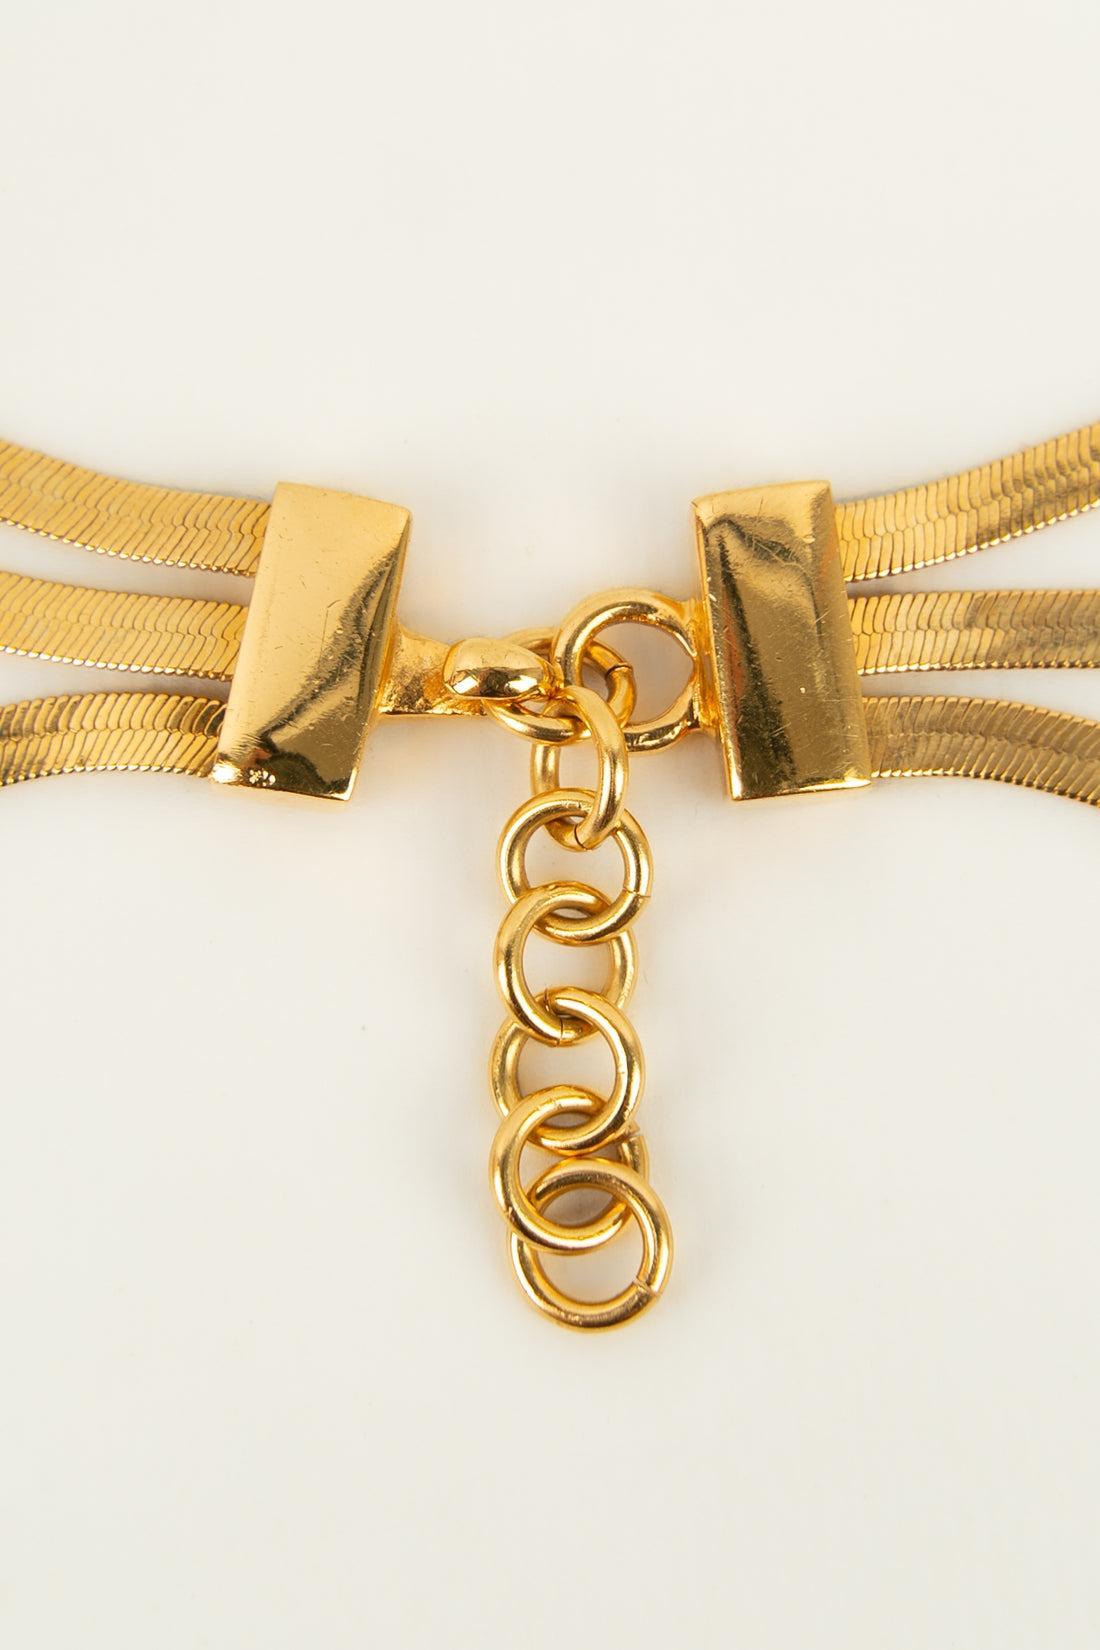 Christian Dior, collier à 3 chaînes en métal plaqué or 3